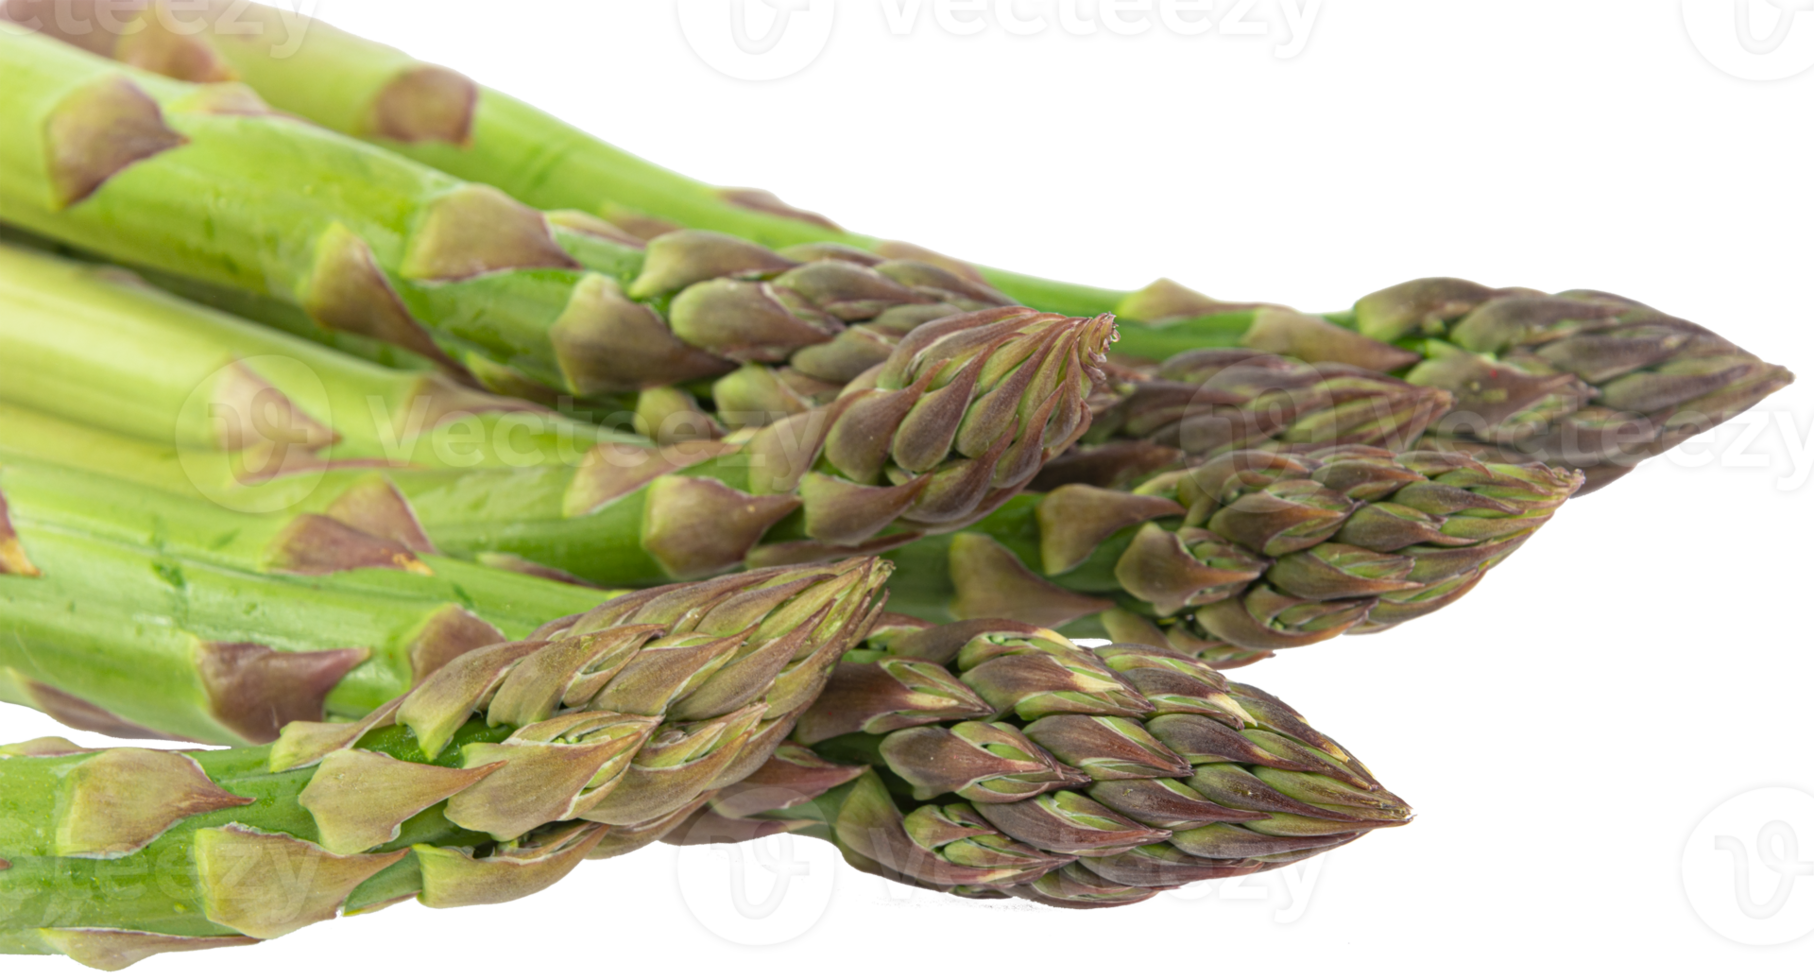 asperges vertes fraîches végétariennes. légumes découpés png